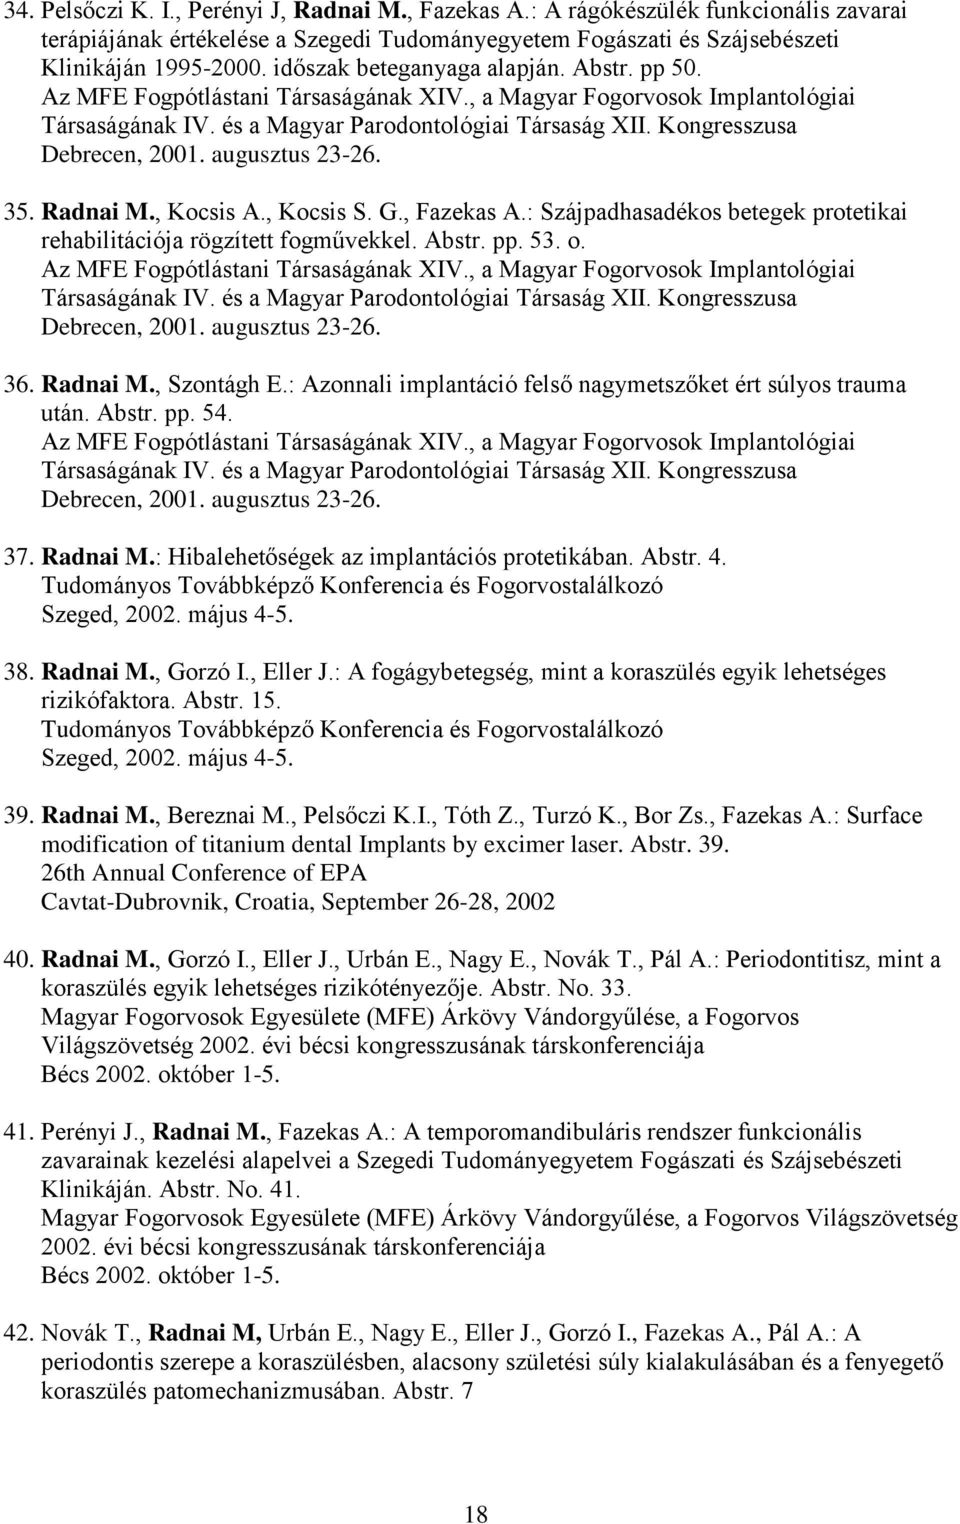 Kongresszusa Debrecen, 2001. augusztus 23-26. 35. Radnai M., Kocsis A., Kocsis S. G., Fazekas A.: Szájpadhasadékos betegek protetikai rehabilitációja rögzített fogművekkel. Abstr. pp. 53. o.